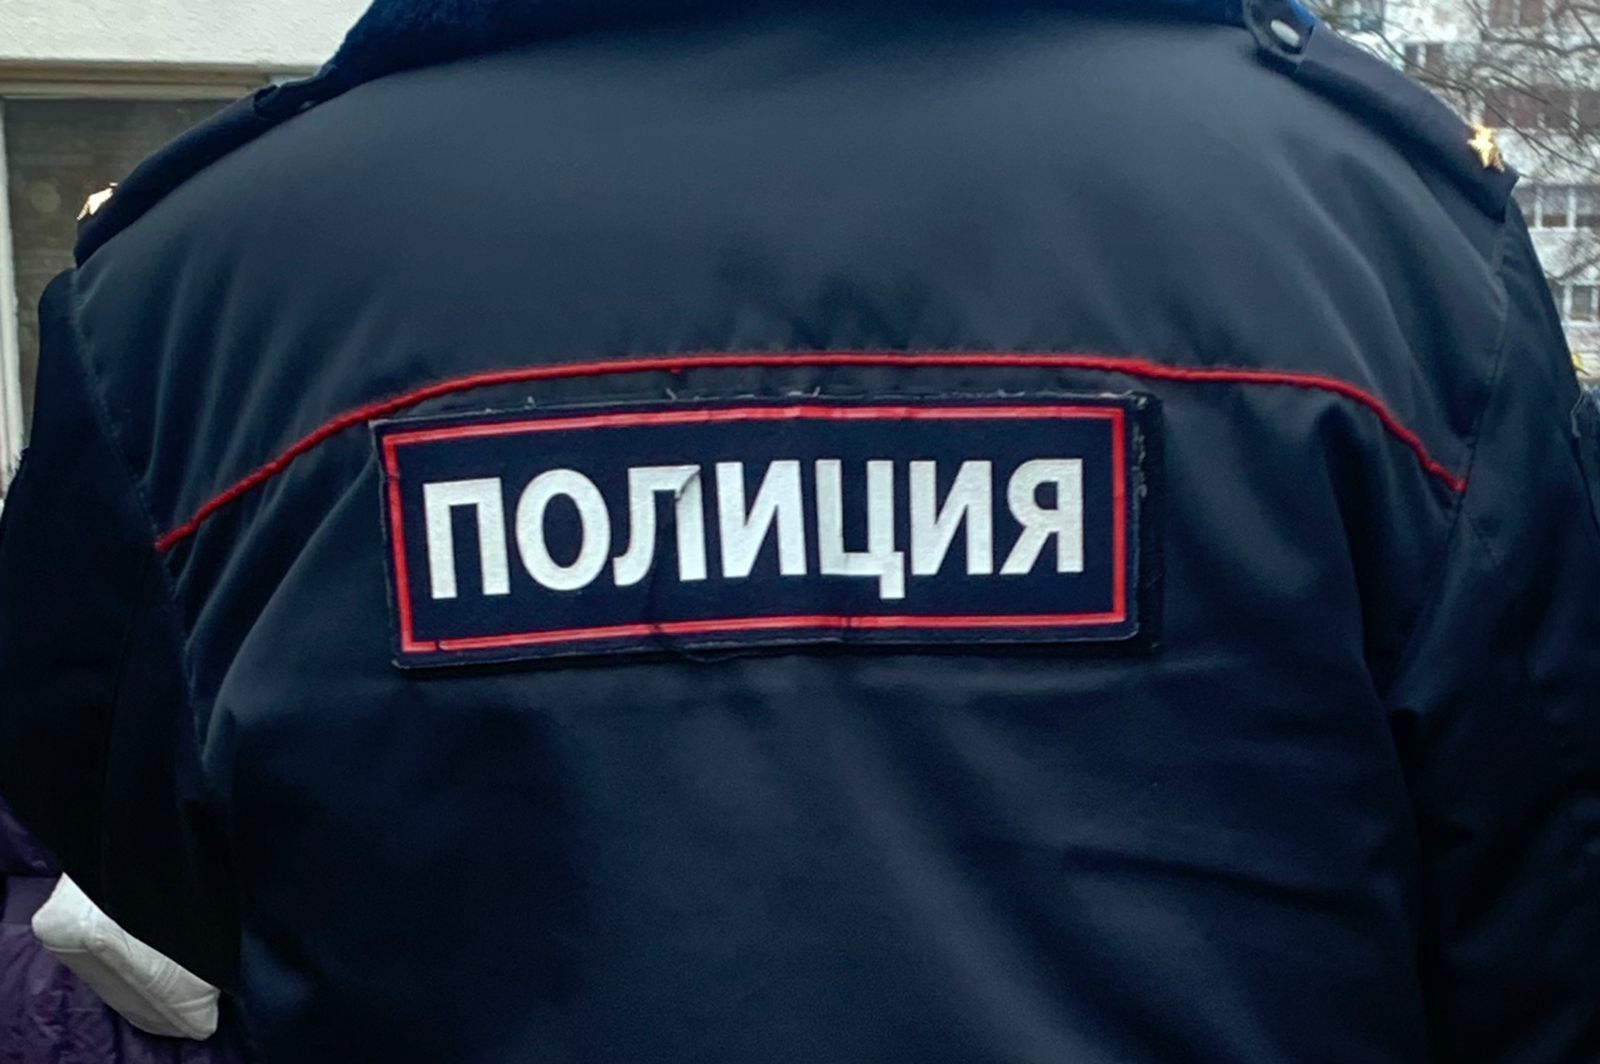 В Татарстане неизвестный обстрелял машину с людьми, один человек погиб